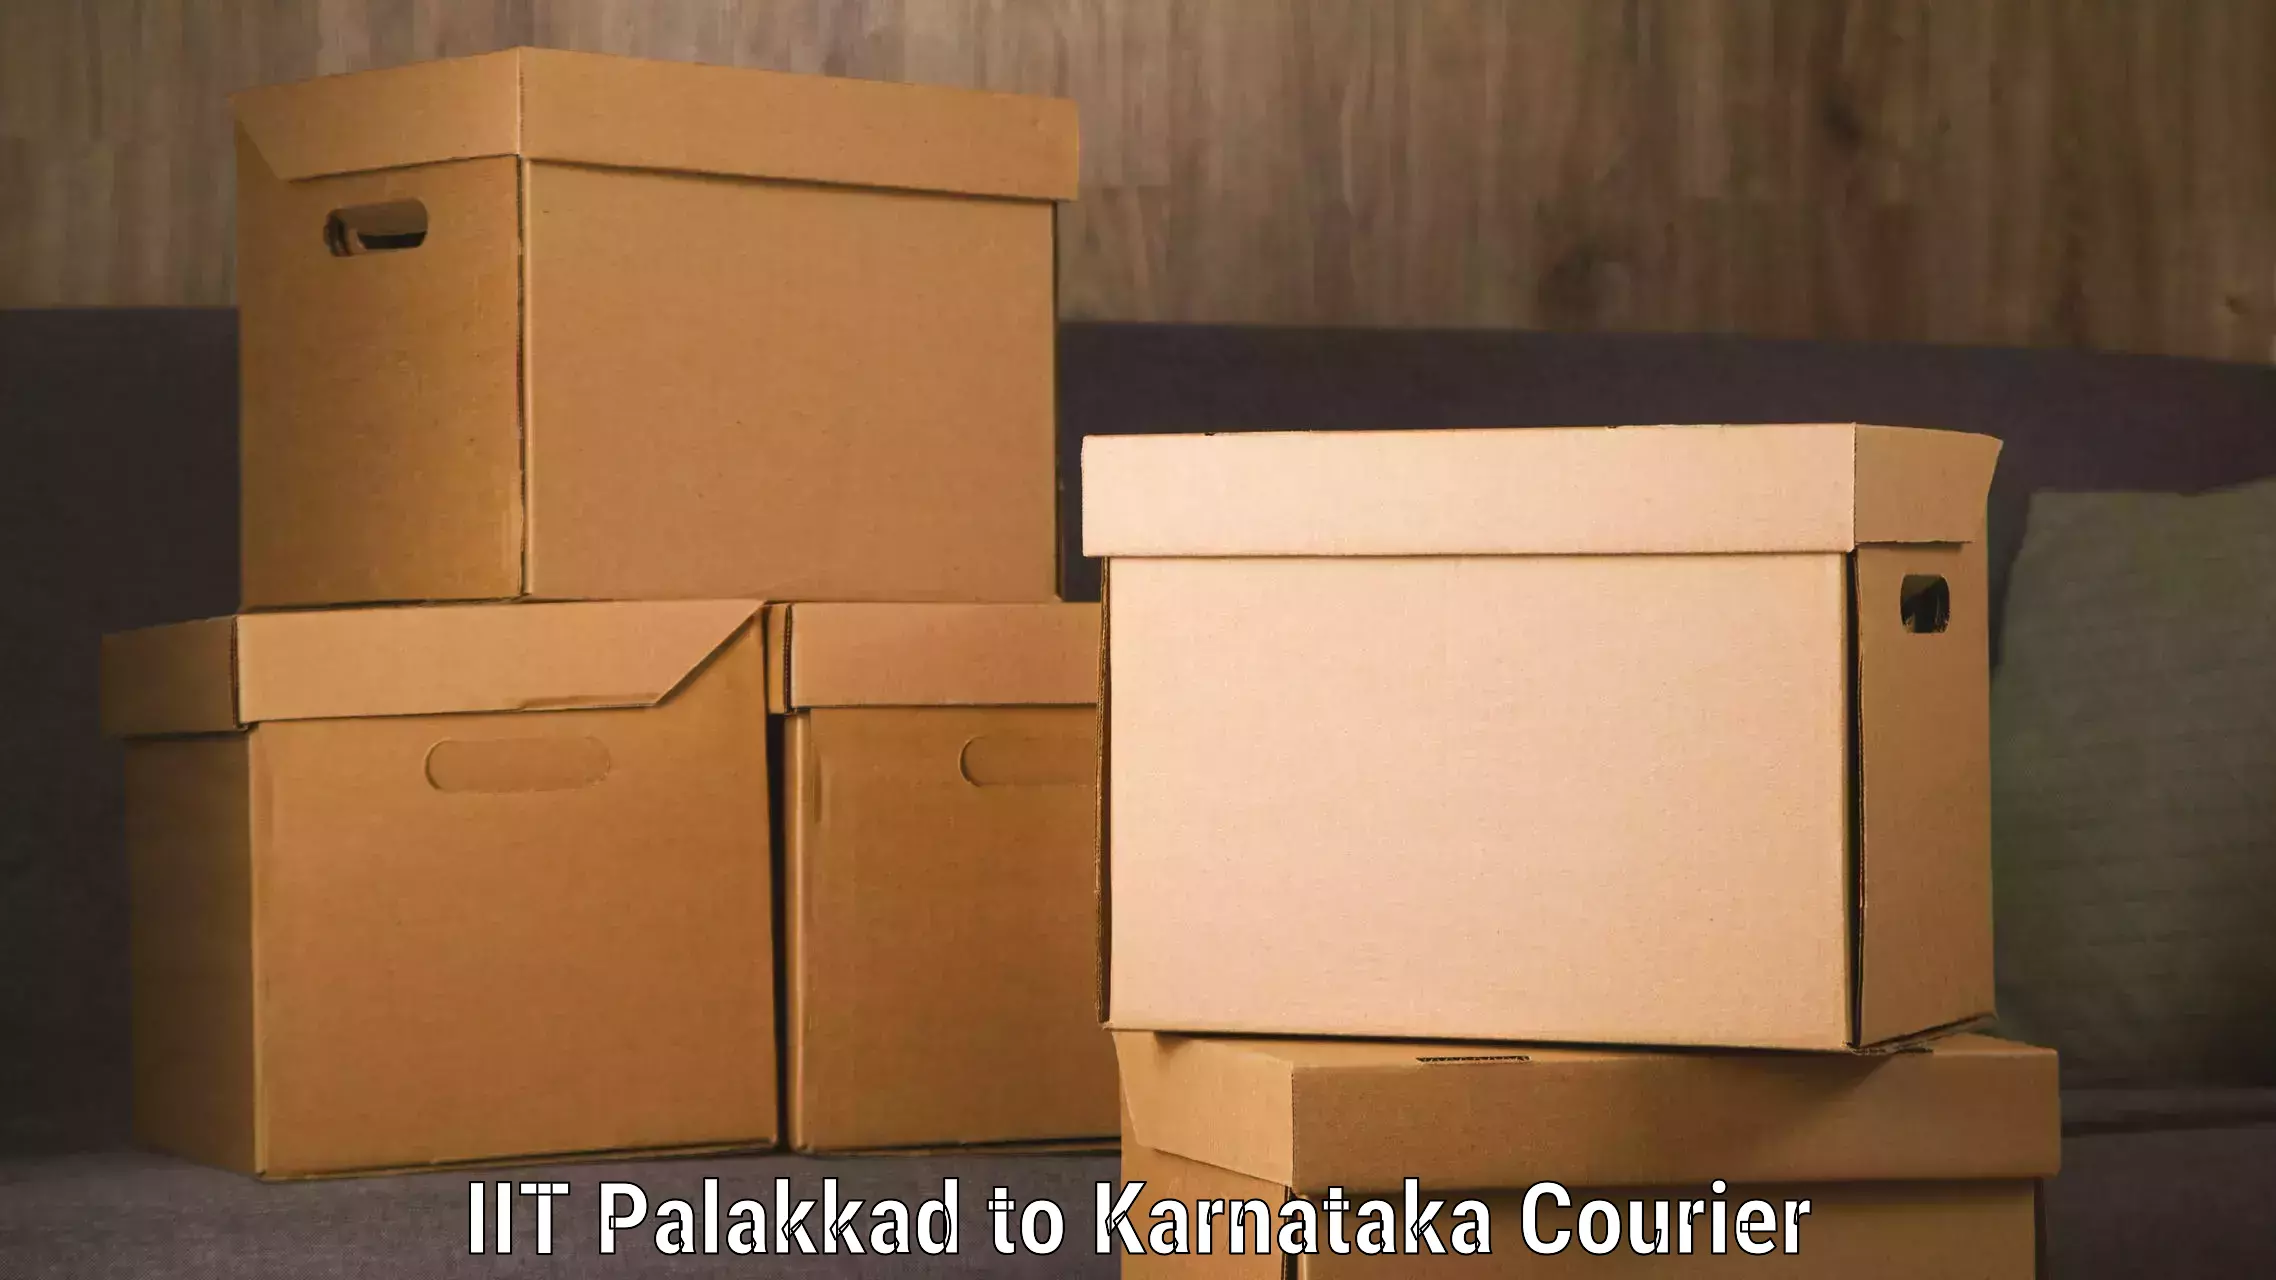 Urban courier service IIT Palakkad to Gurmatkal